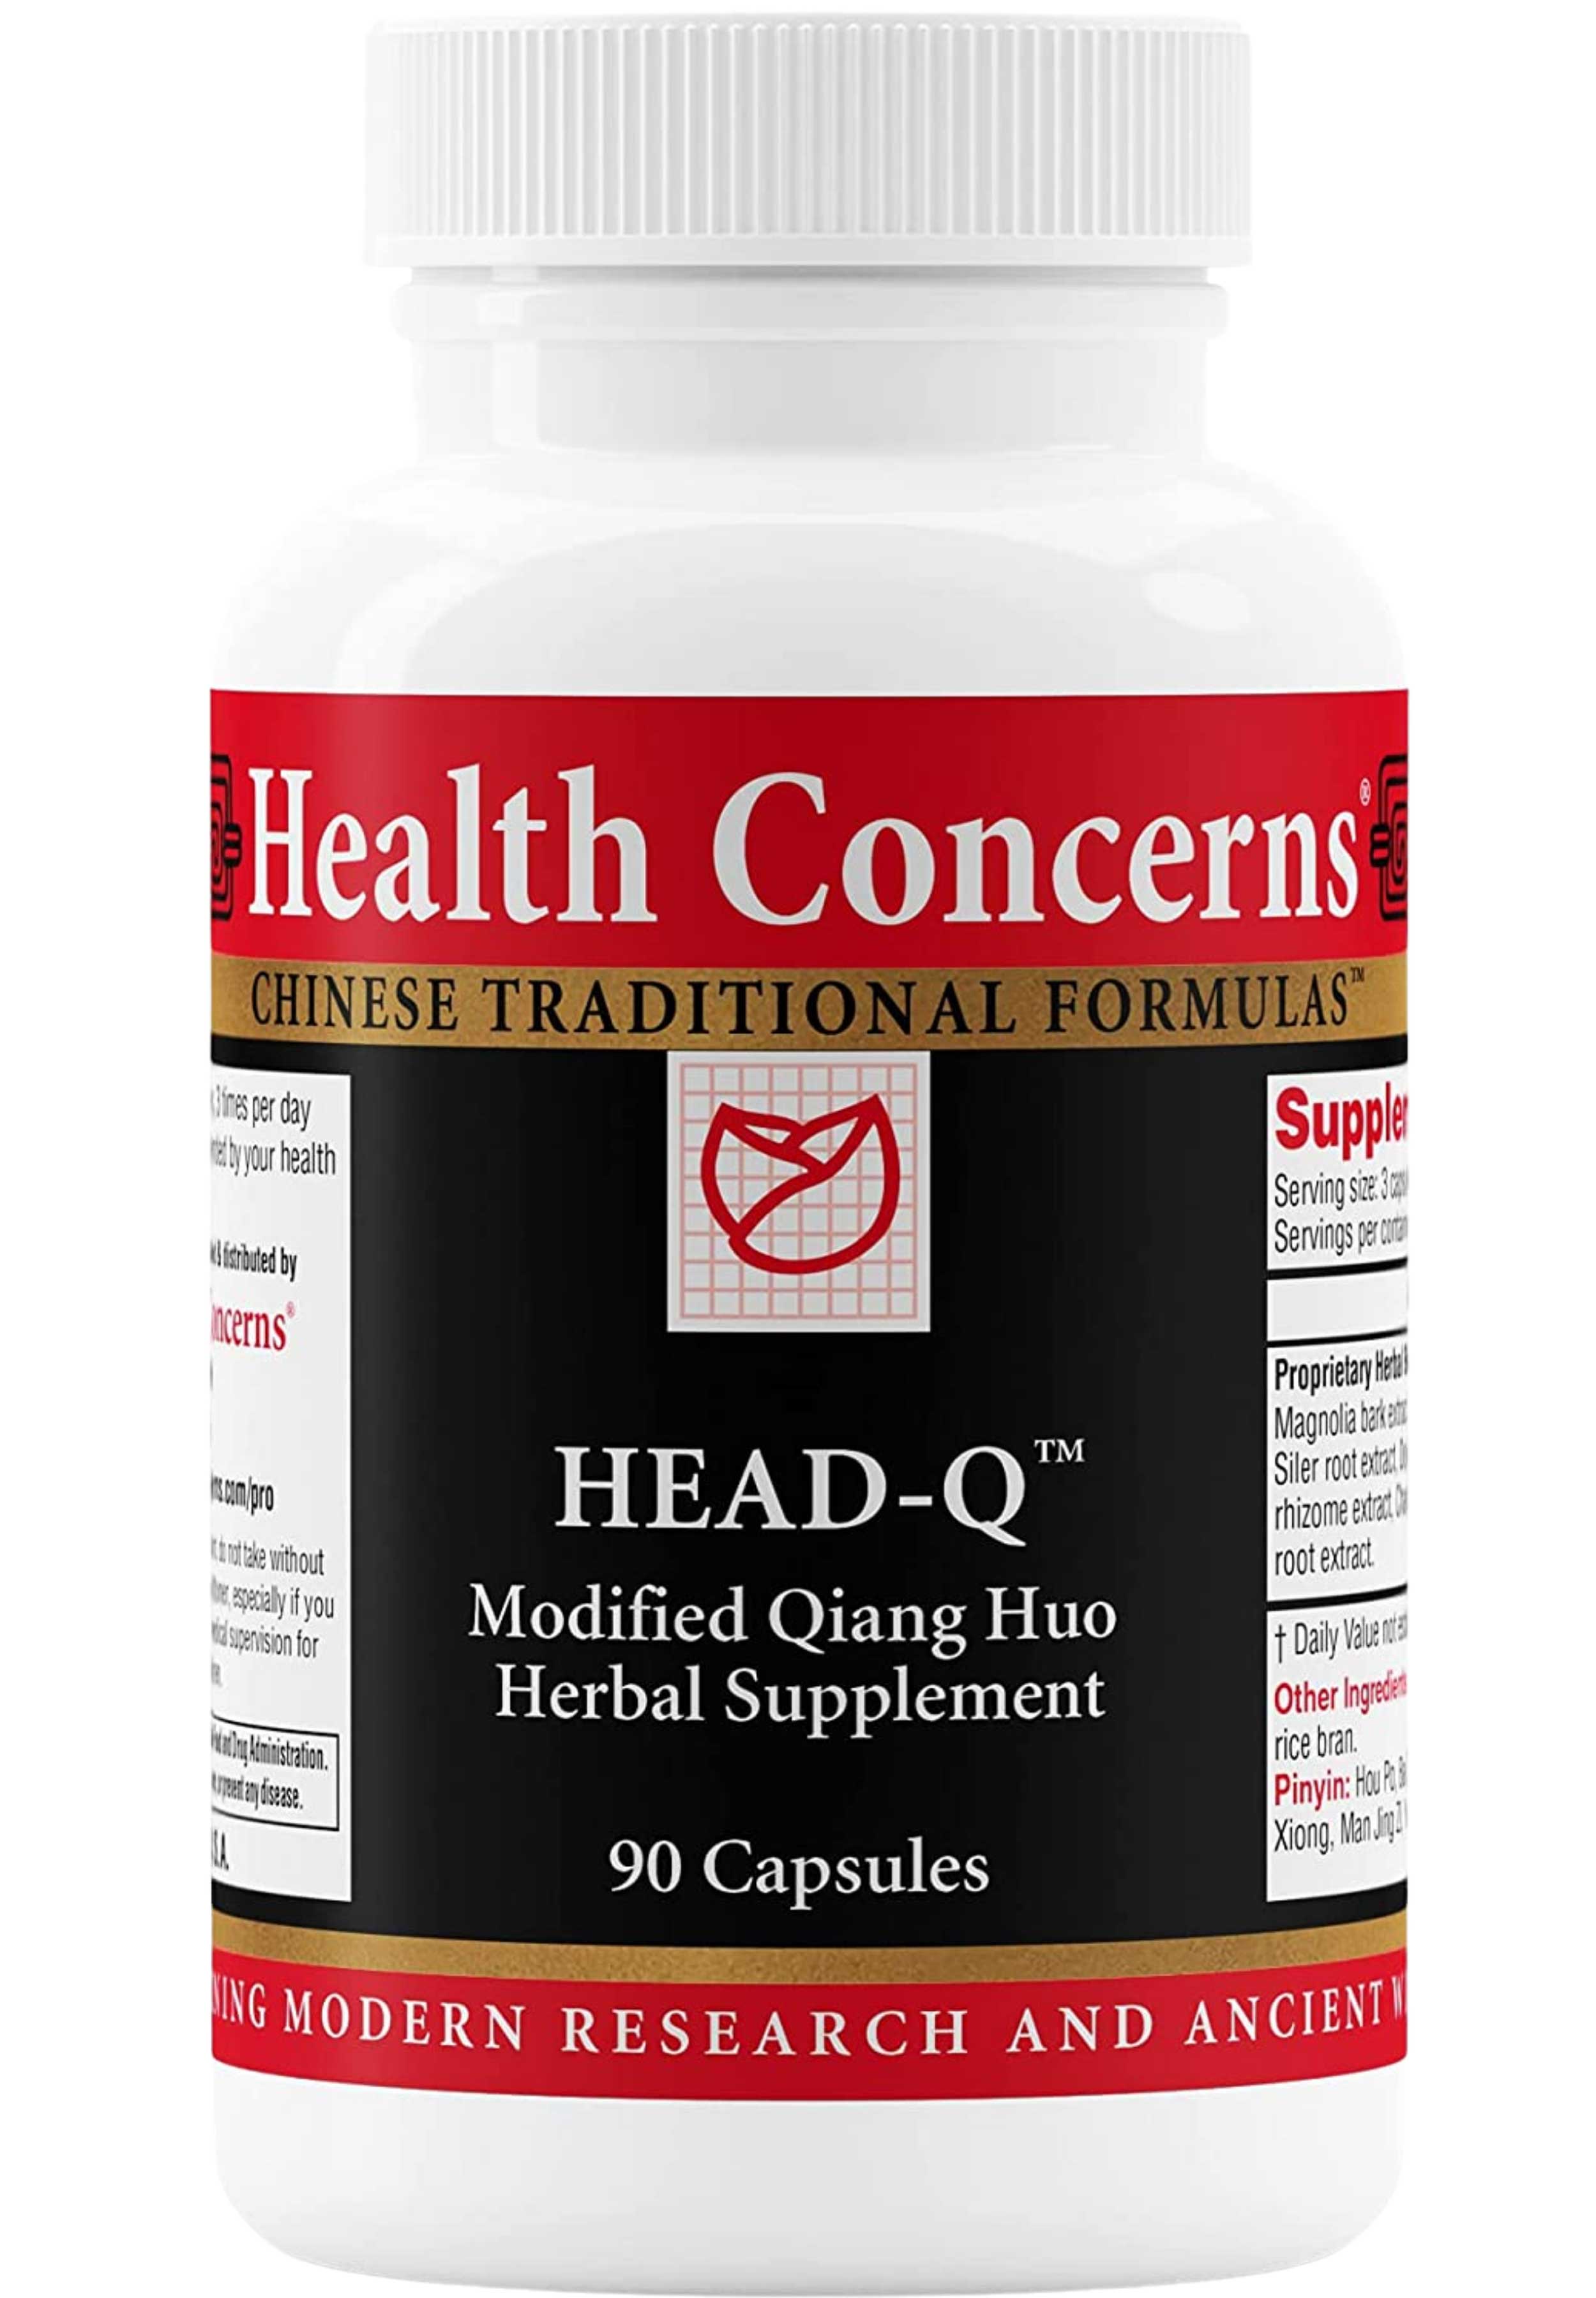 Health Concerns Head-Q